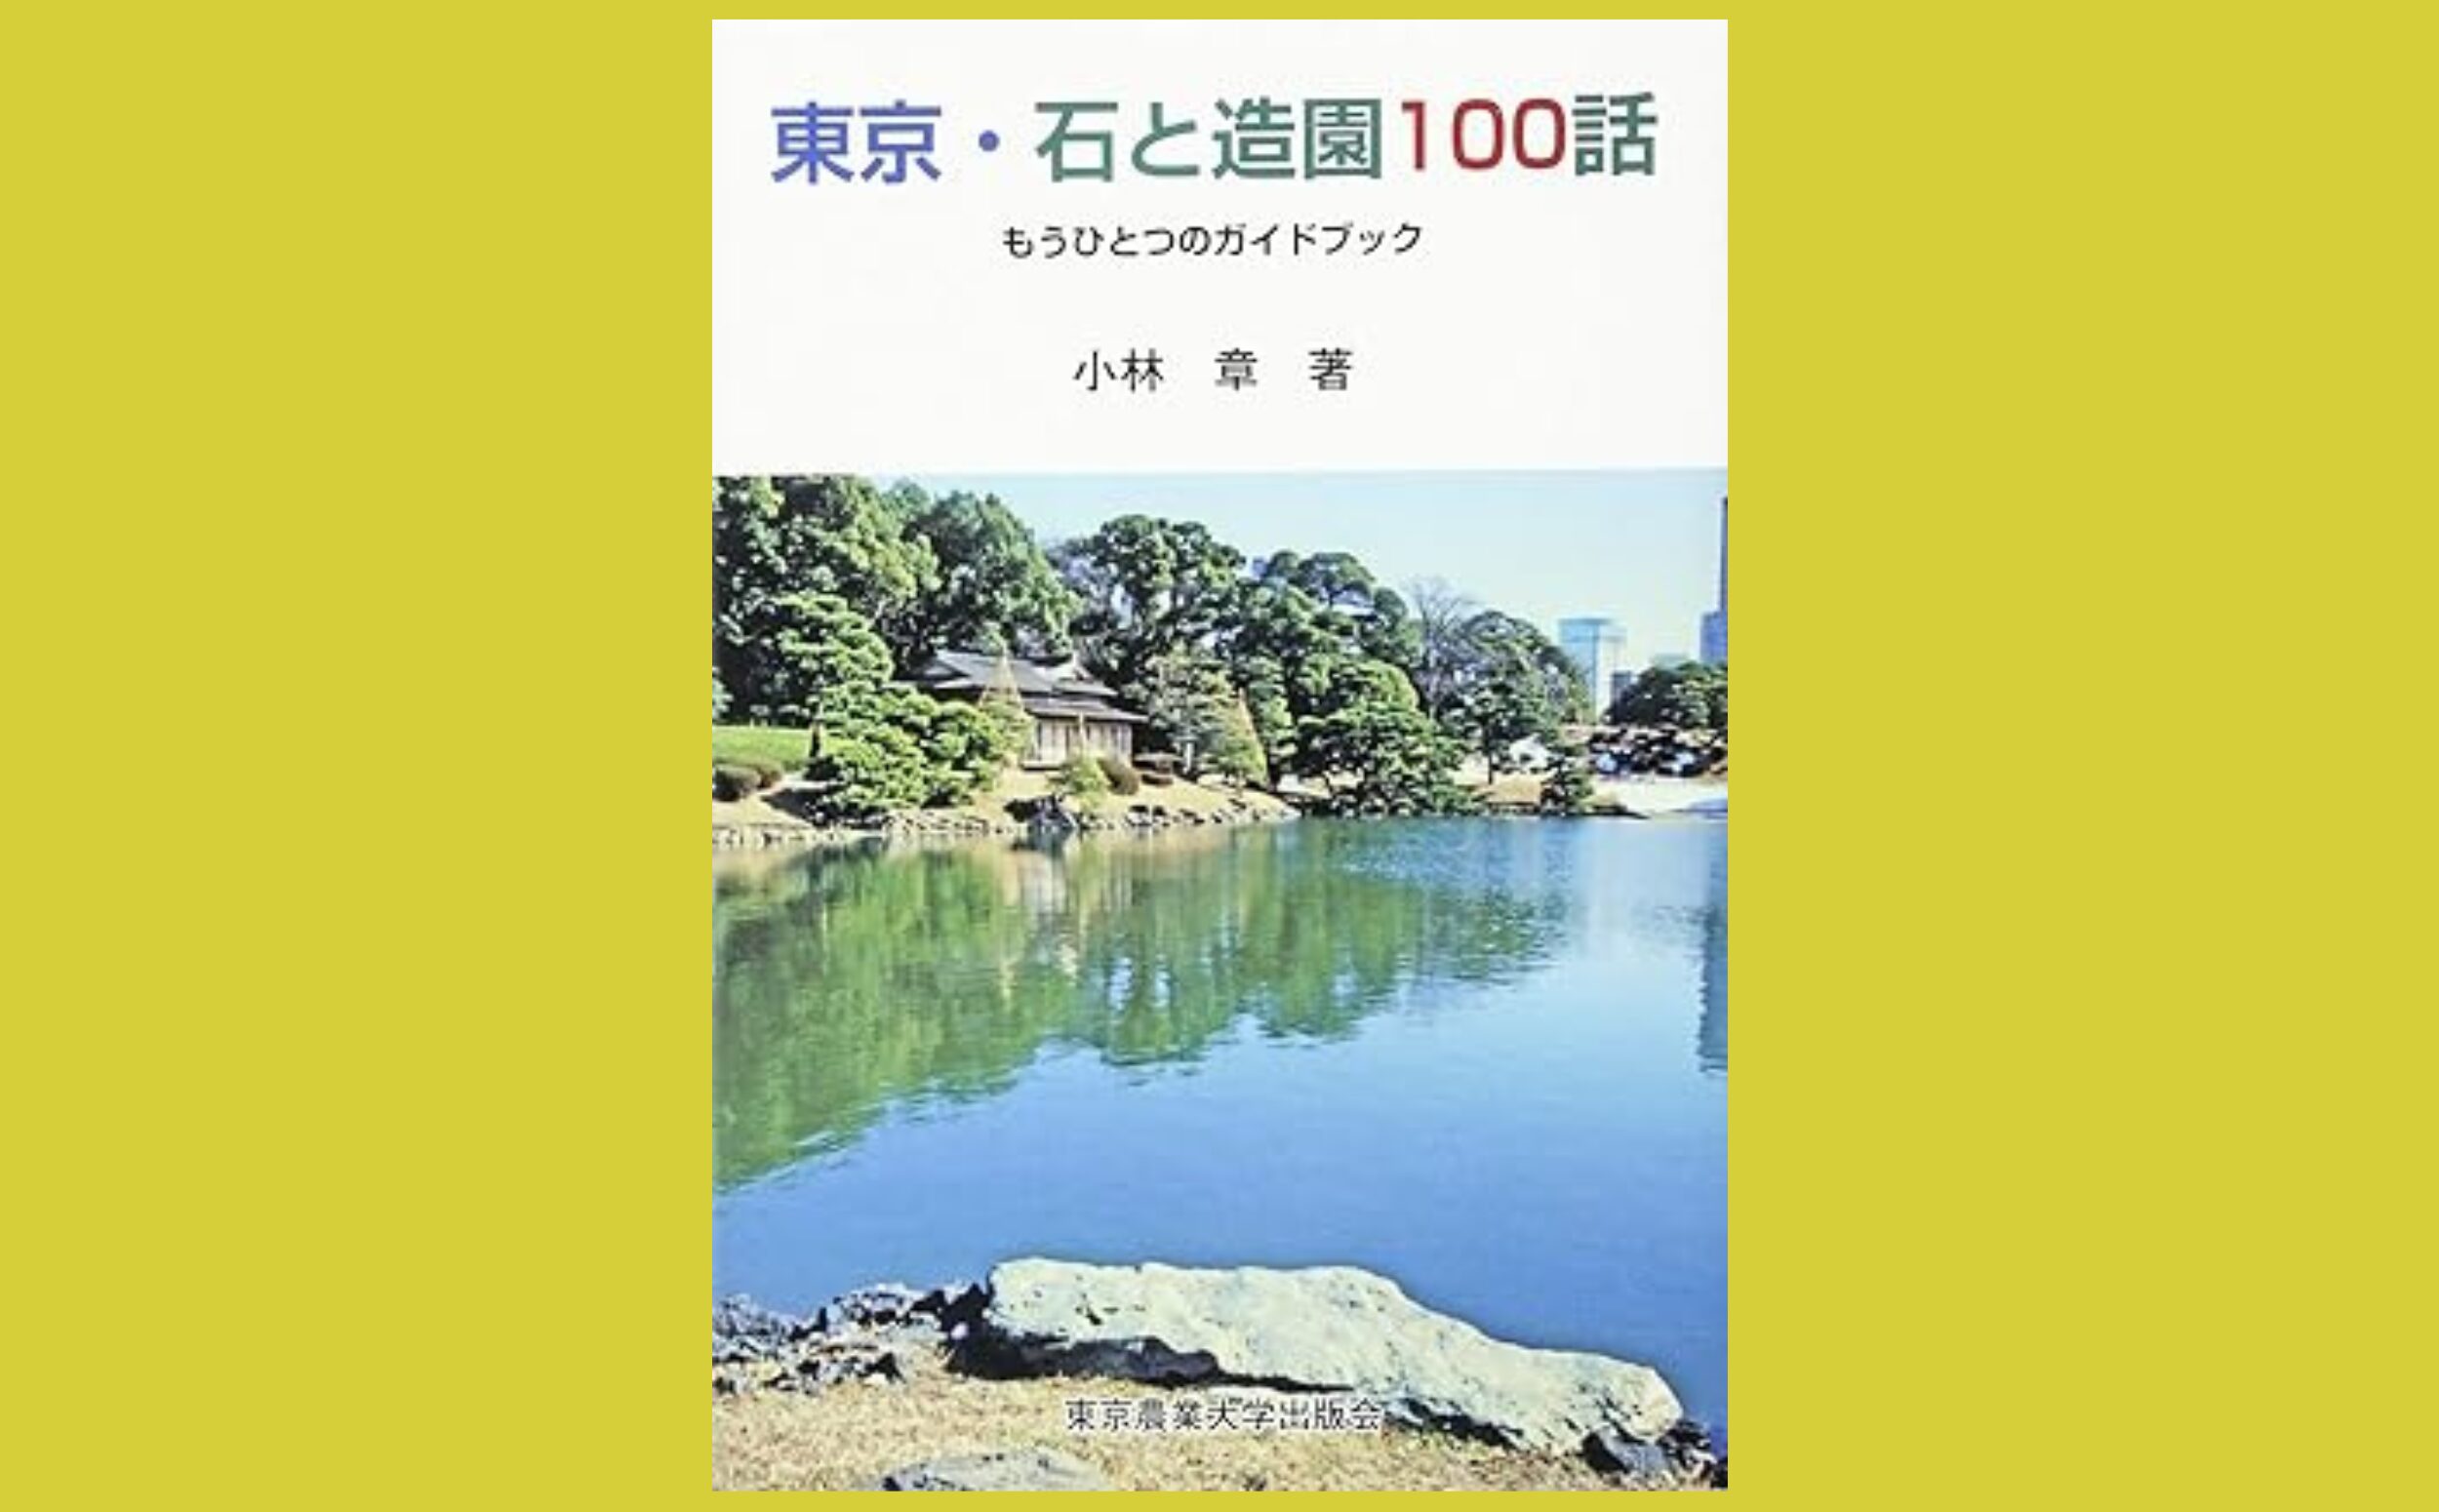 関東エリアの“石”を中心に　造園の歴史を読み解く『東京・石と造園100話』もうひとつのガイドブック